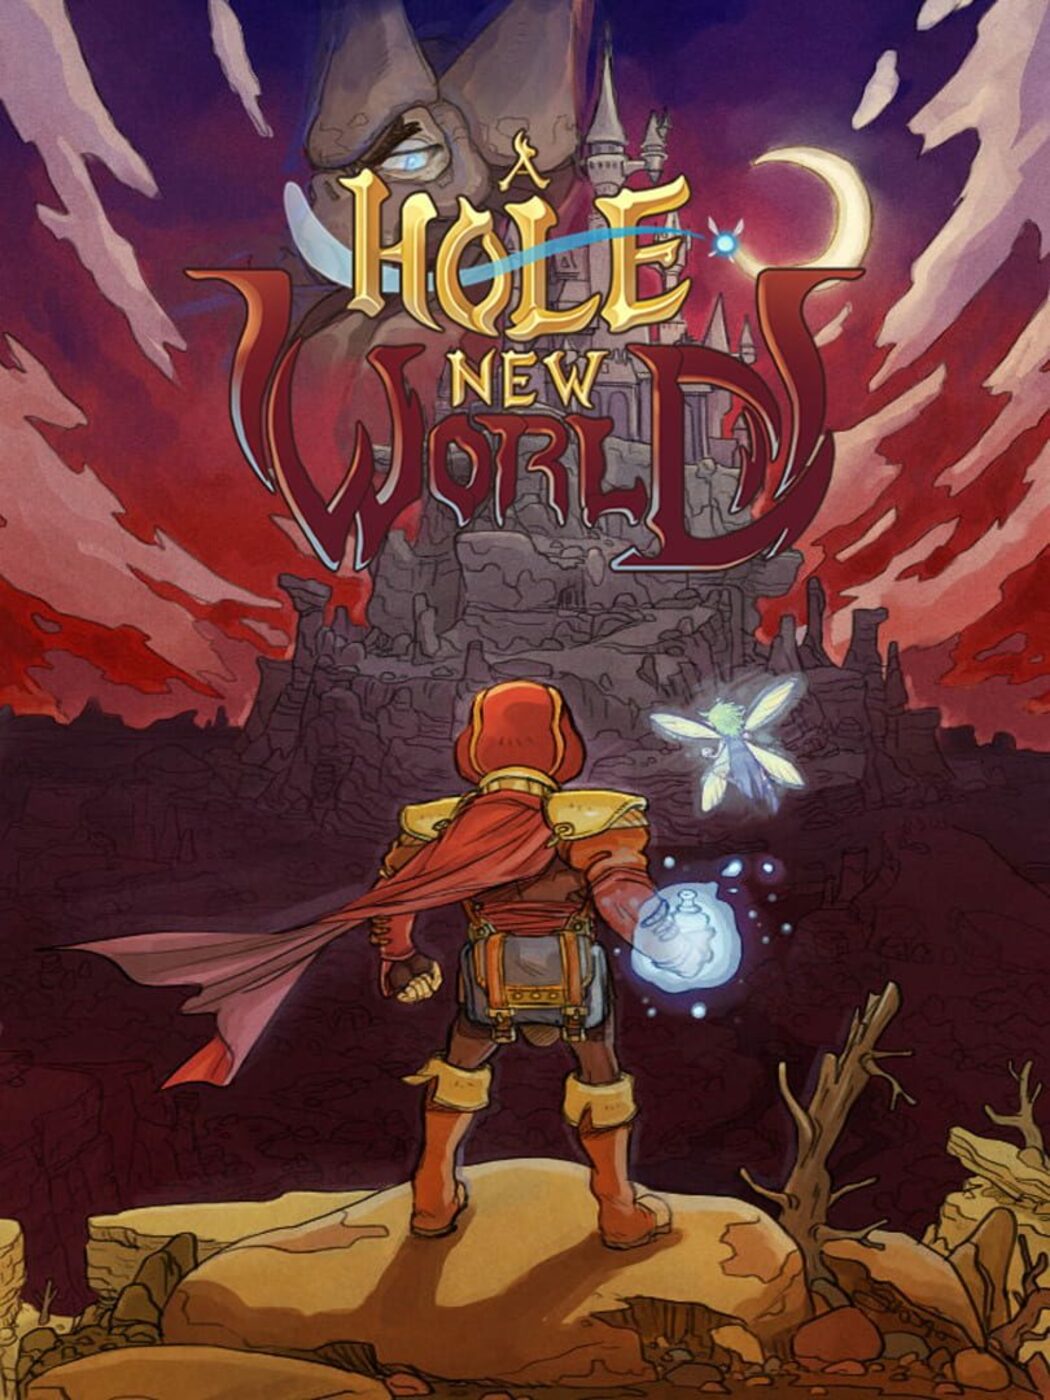 Hole World